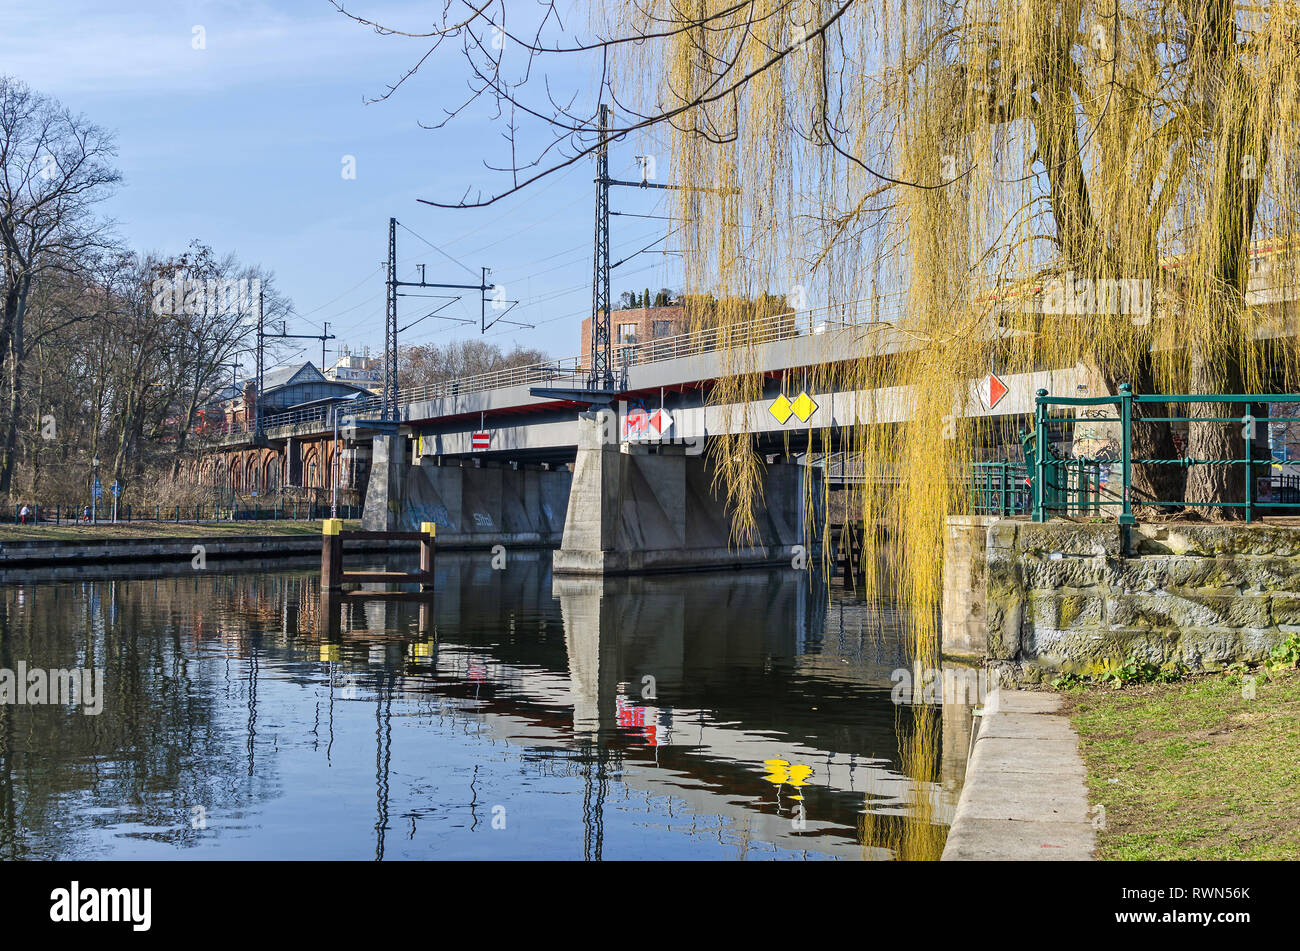 Berlin, Allemagne - 17 Février 2019 : remblai Bellevue Ufer de la Spree avec le pont ferroviaire à poutre-caisson en acier Bellevue. Banque D'Images